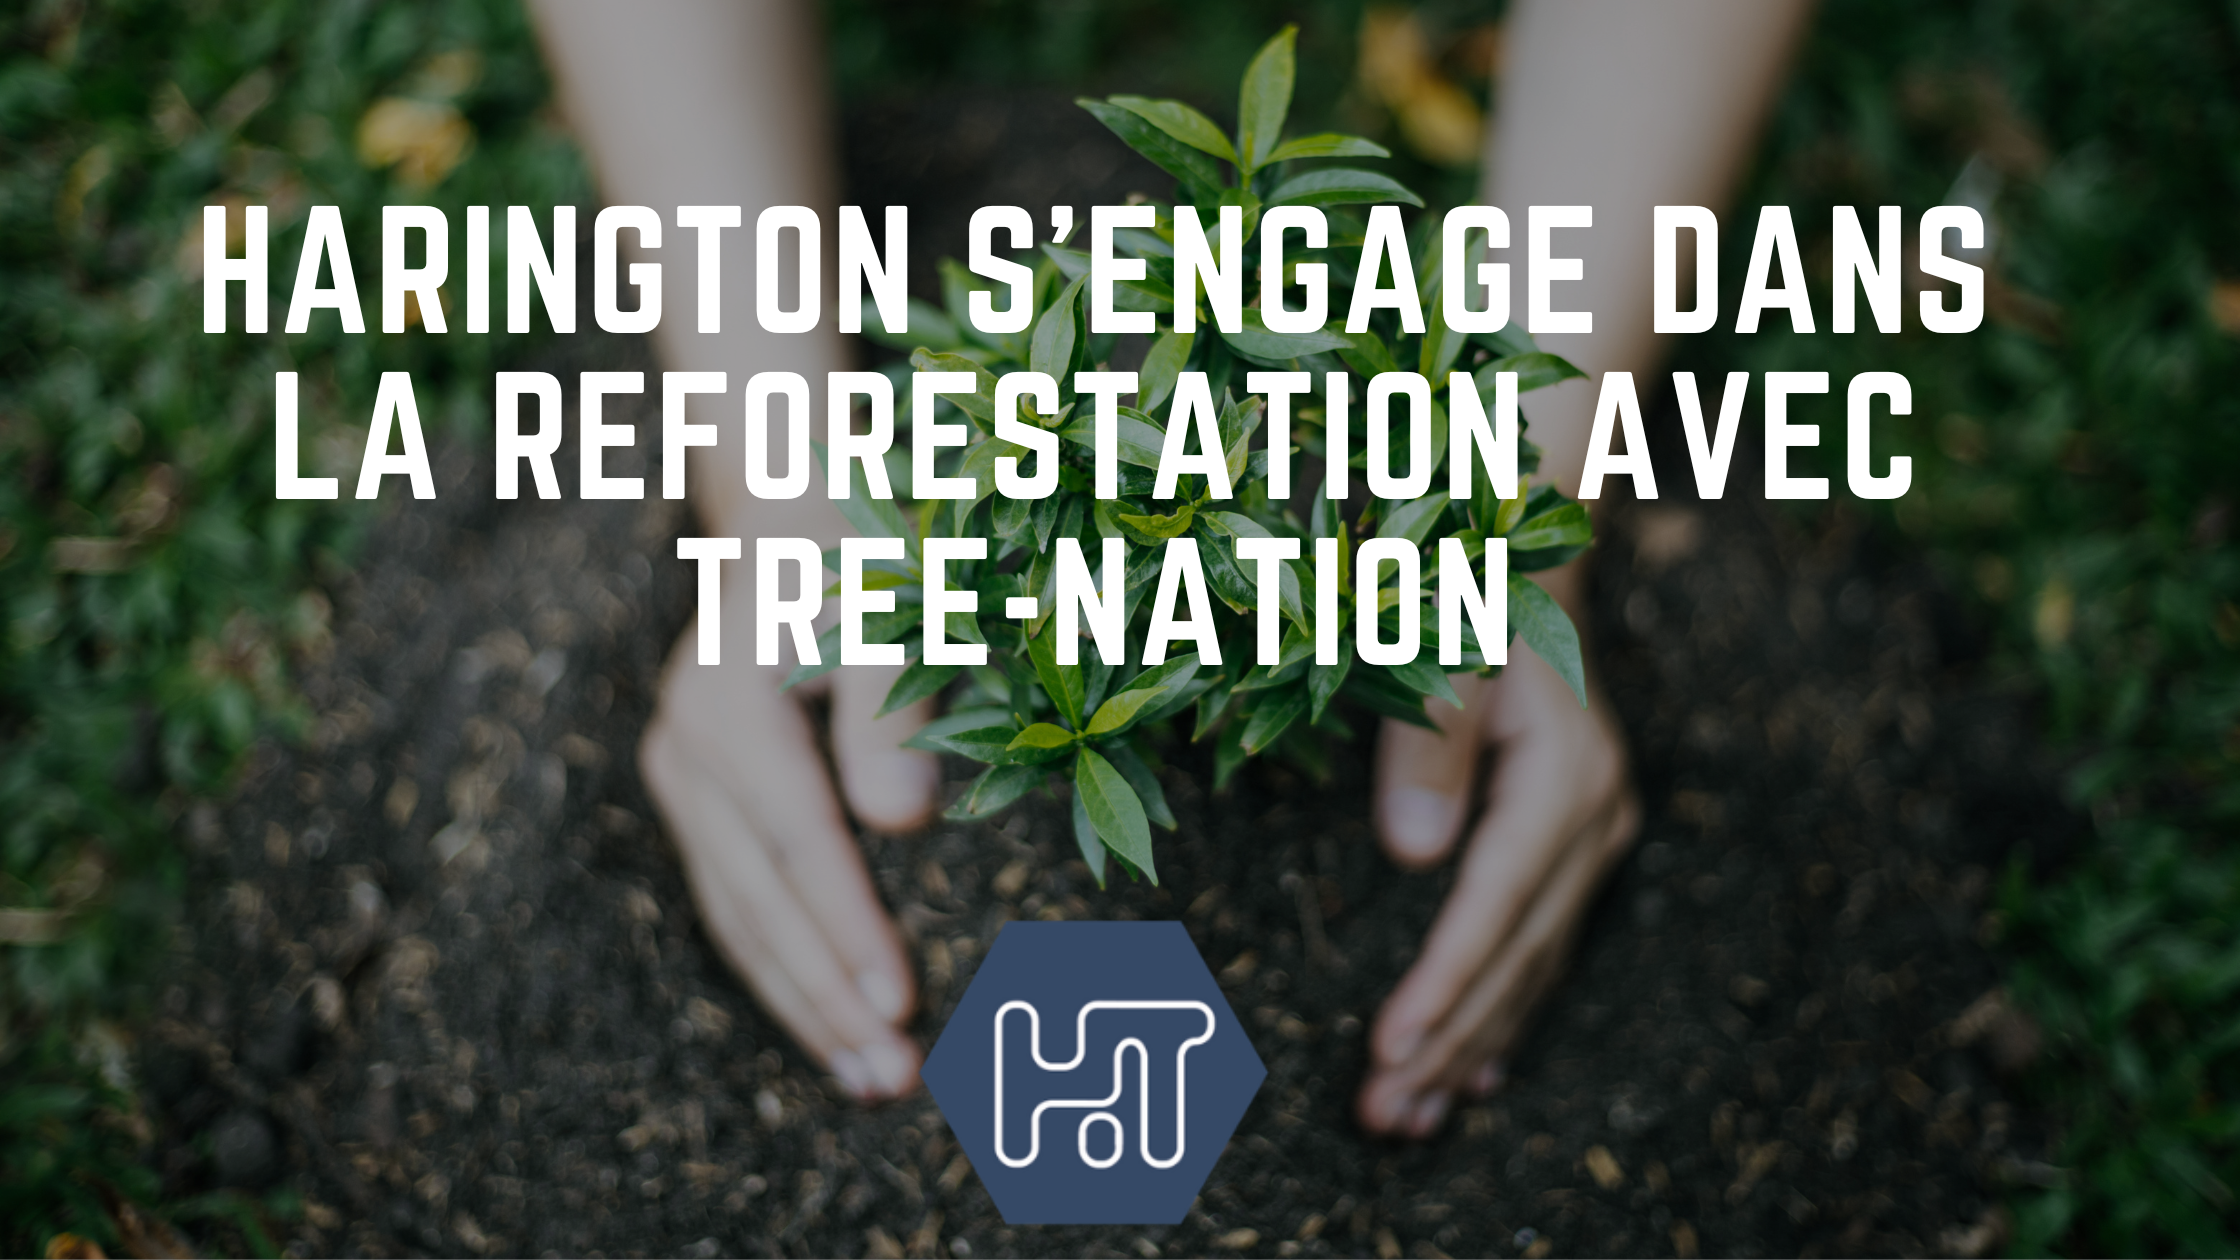 Harington s’engage dans la reforestation de la planète pour compenser ses émissions de CO2 avec tree-nation.